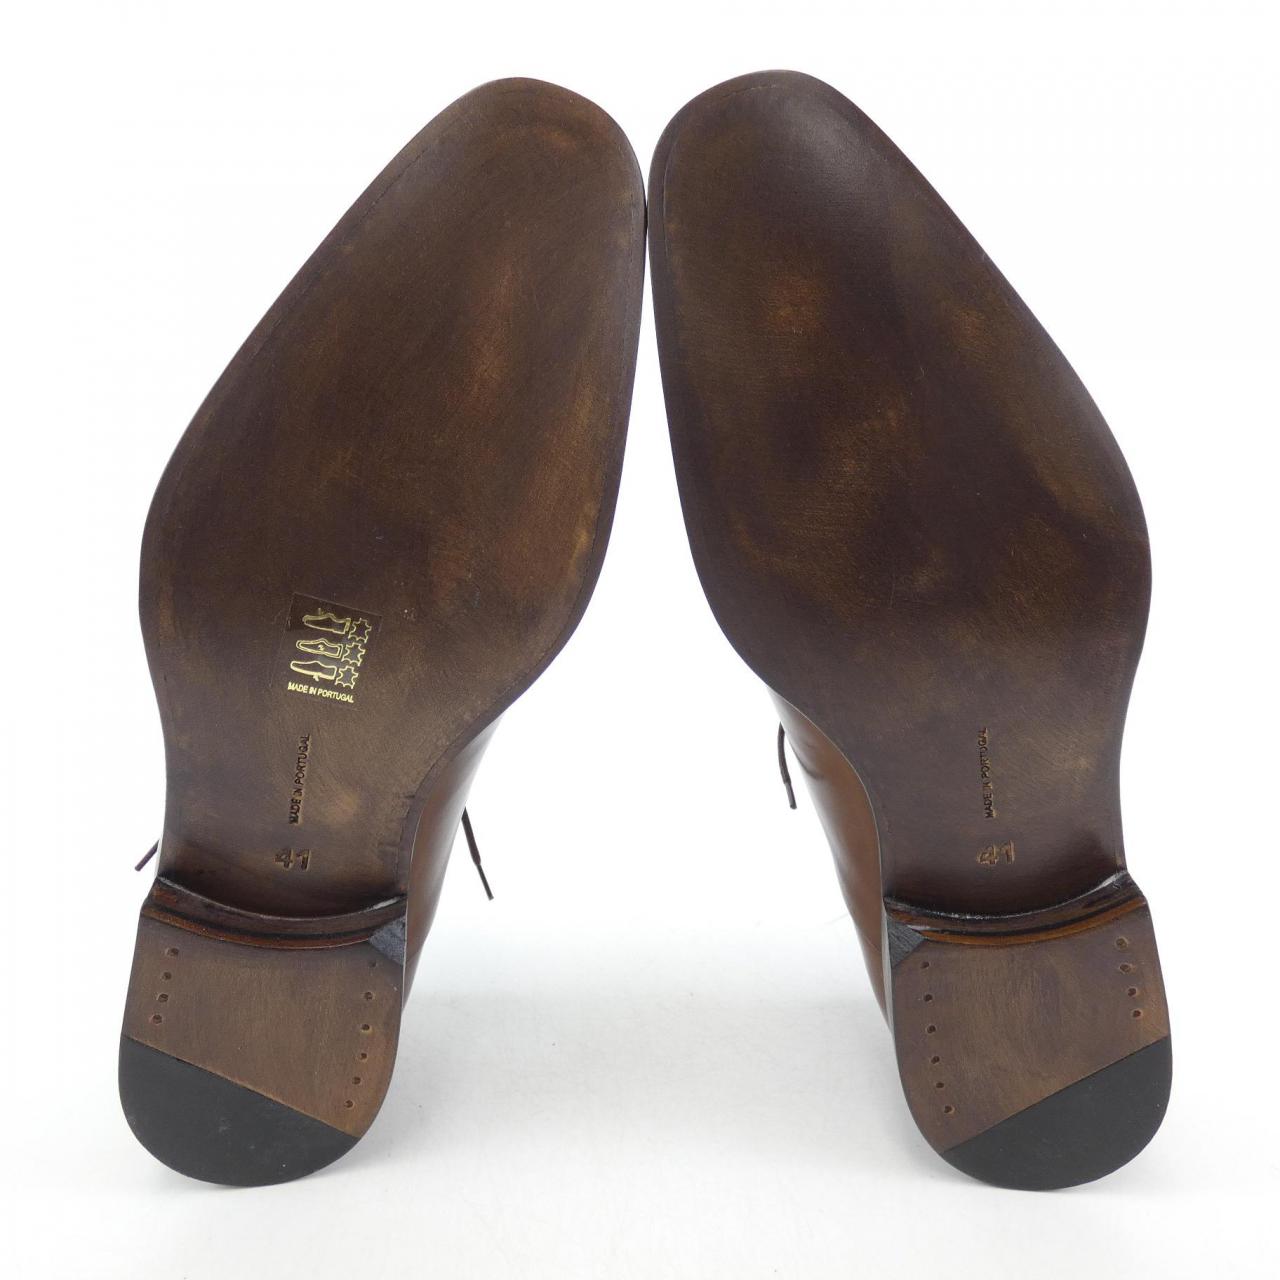 Pierre Cardin PIERRE CARDIN shoes